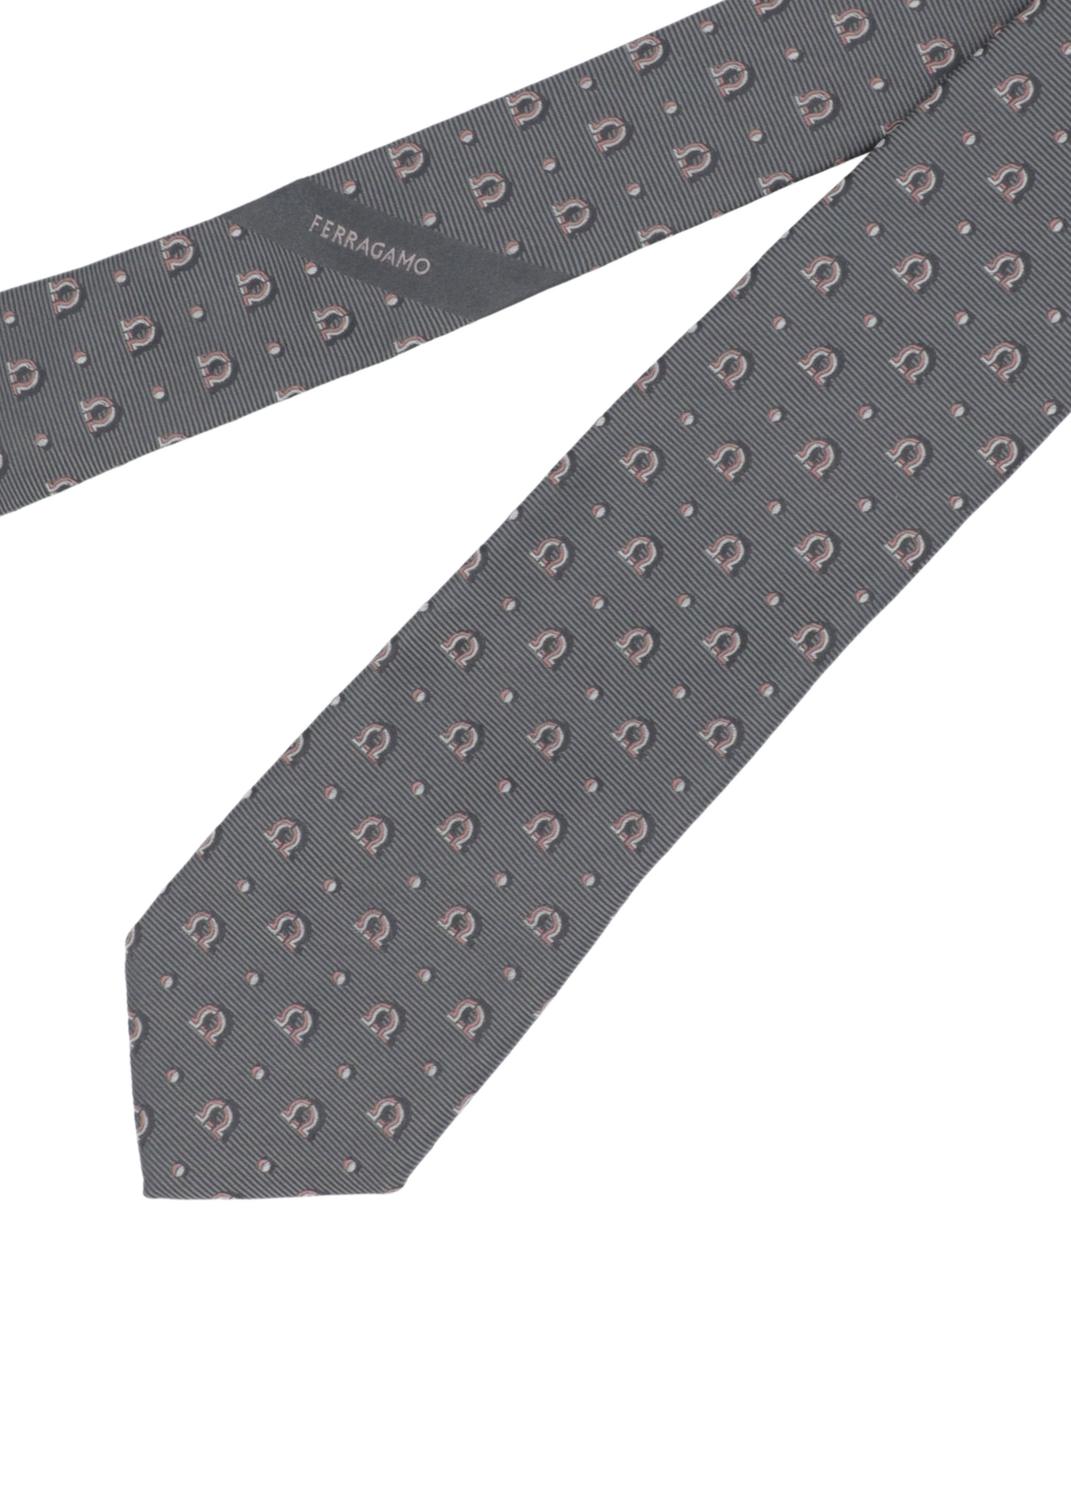 Ferragamo corbata jacquard Gancini FRG-350883